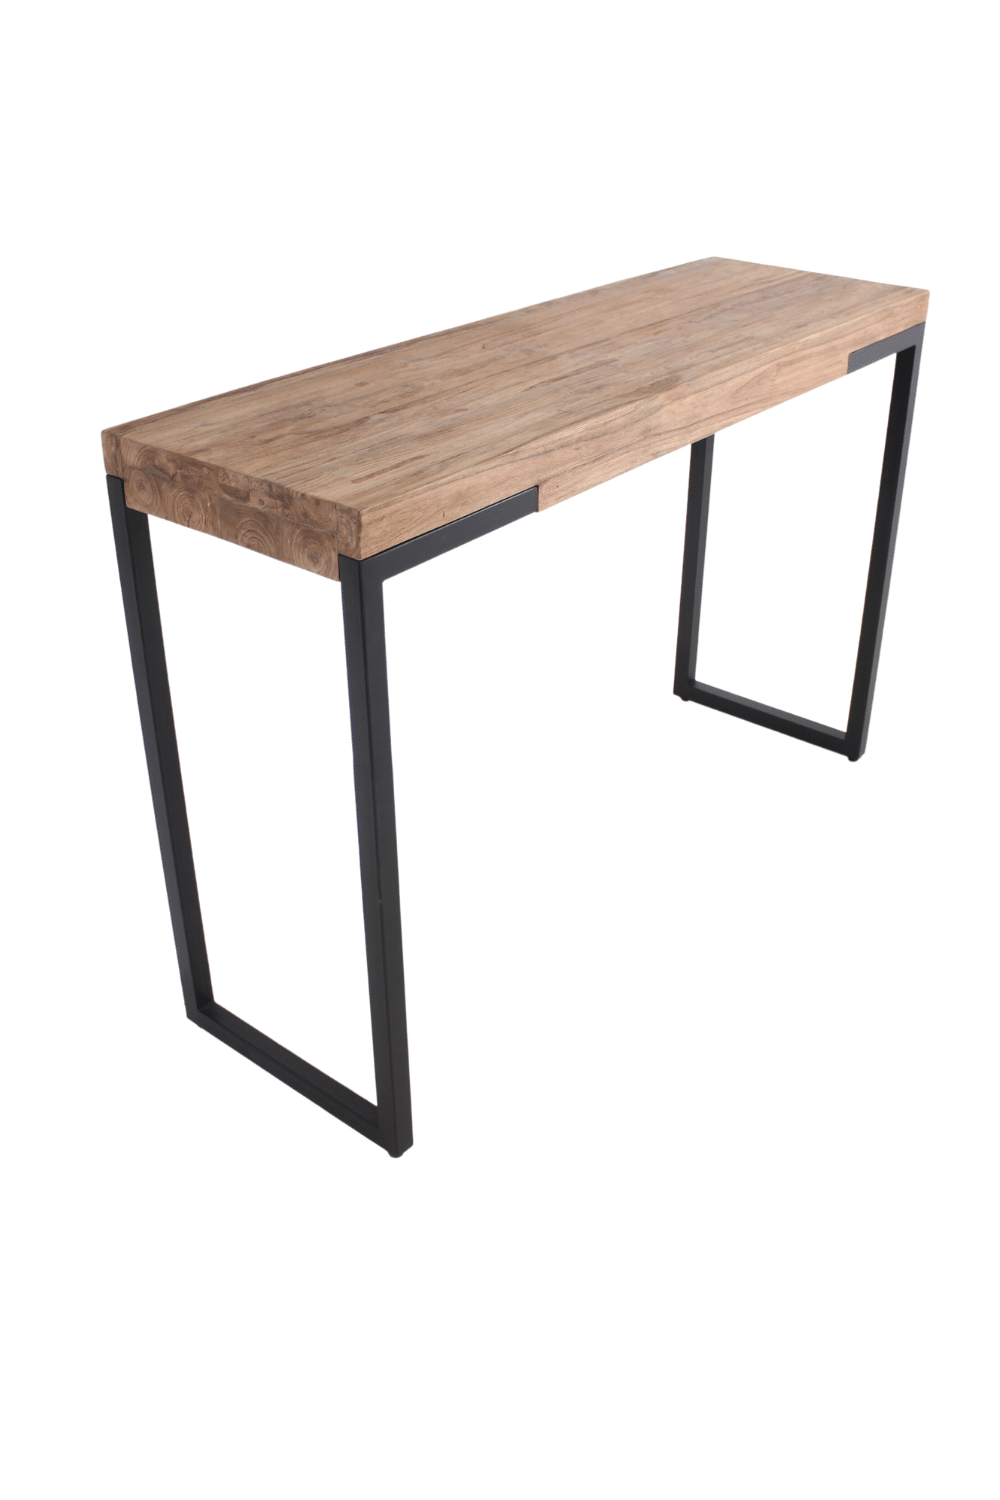 houten industriële bar met 2 krukken ontbijt tafel hoog bureau